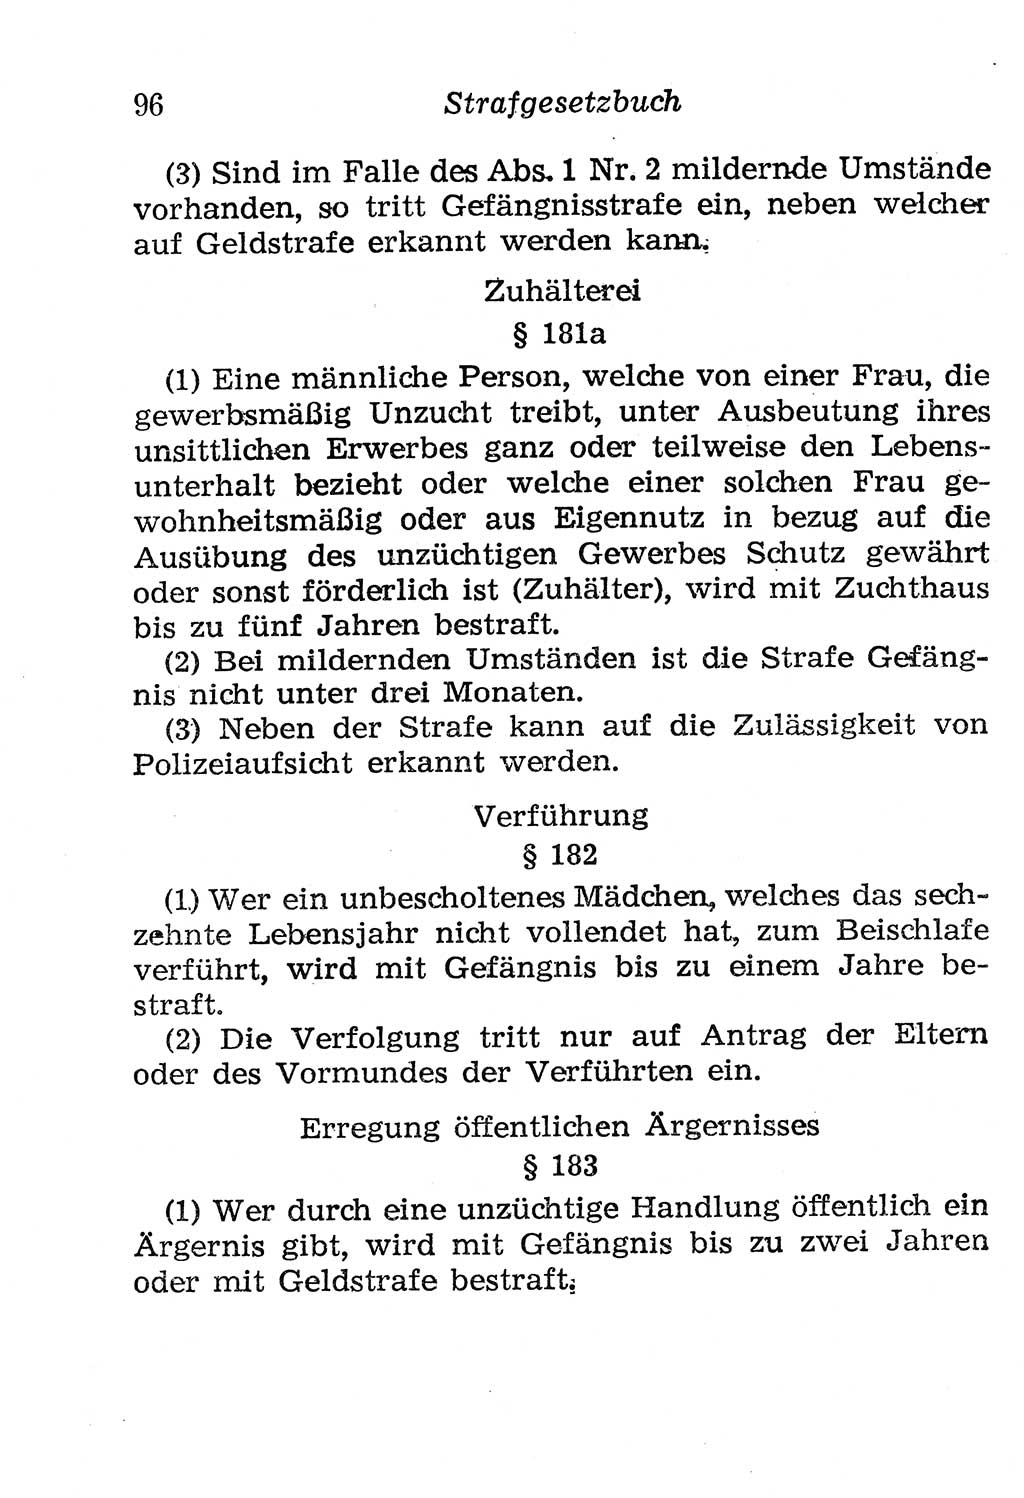 Strafgesetzbuch (StGB) und andere Strafgesetze [Deutsche Demokratische Republik (DDR)] 1958, Seite 96 (StGB Strafges. DDR 1958, S. 96)